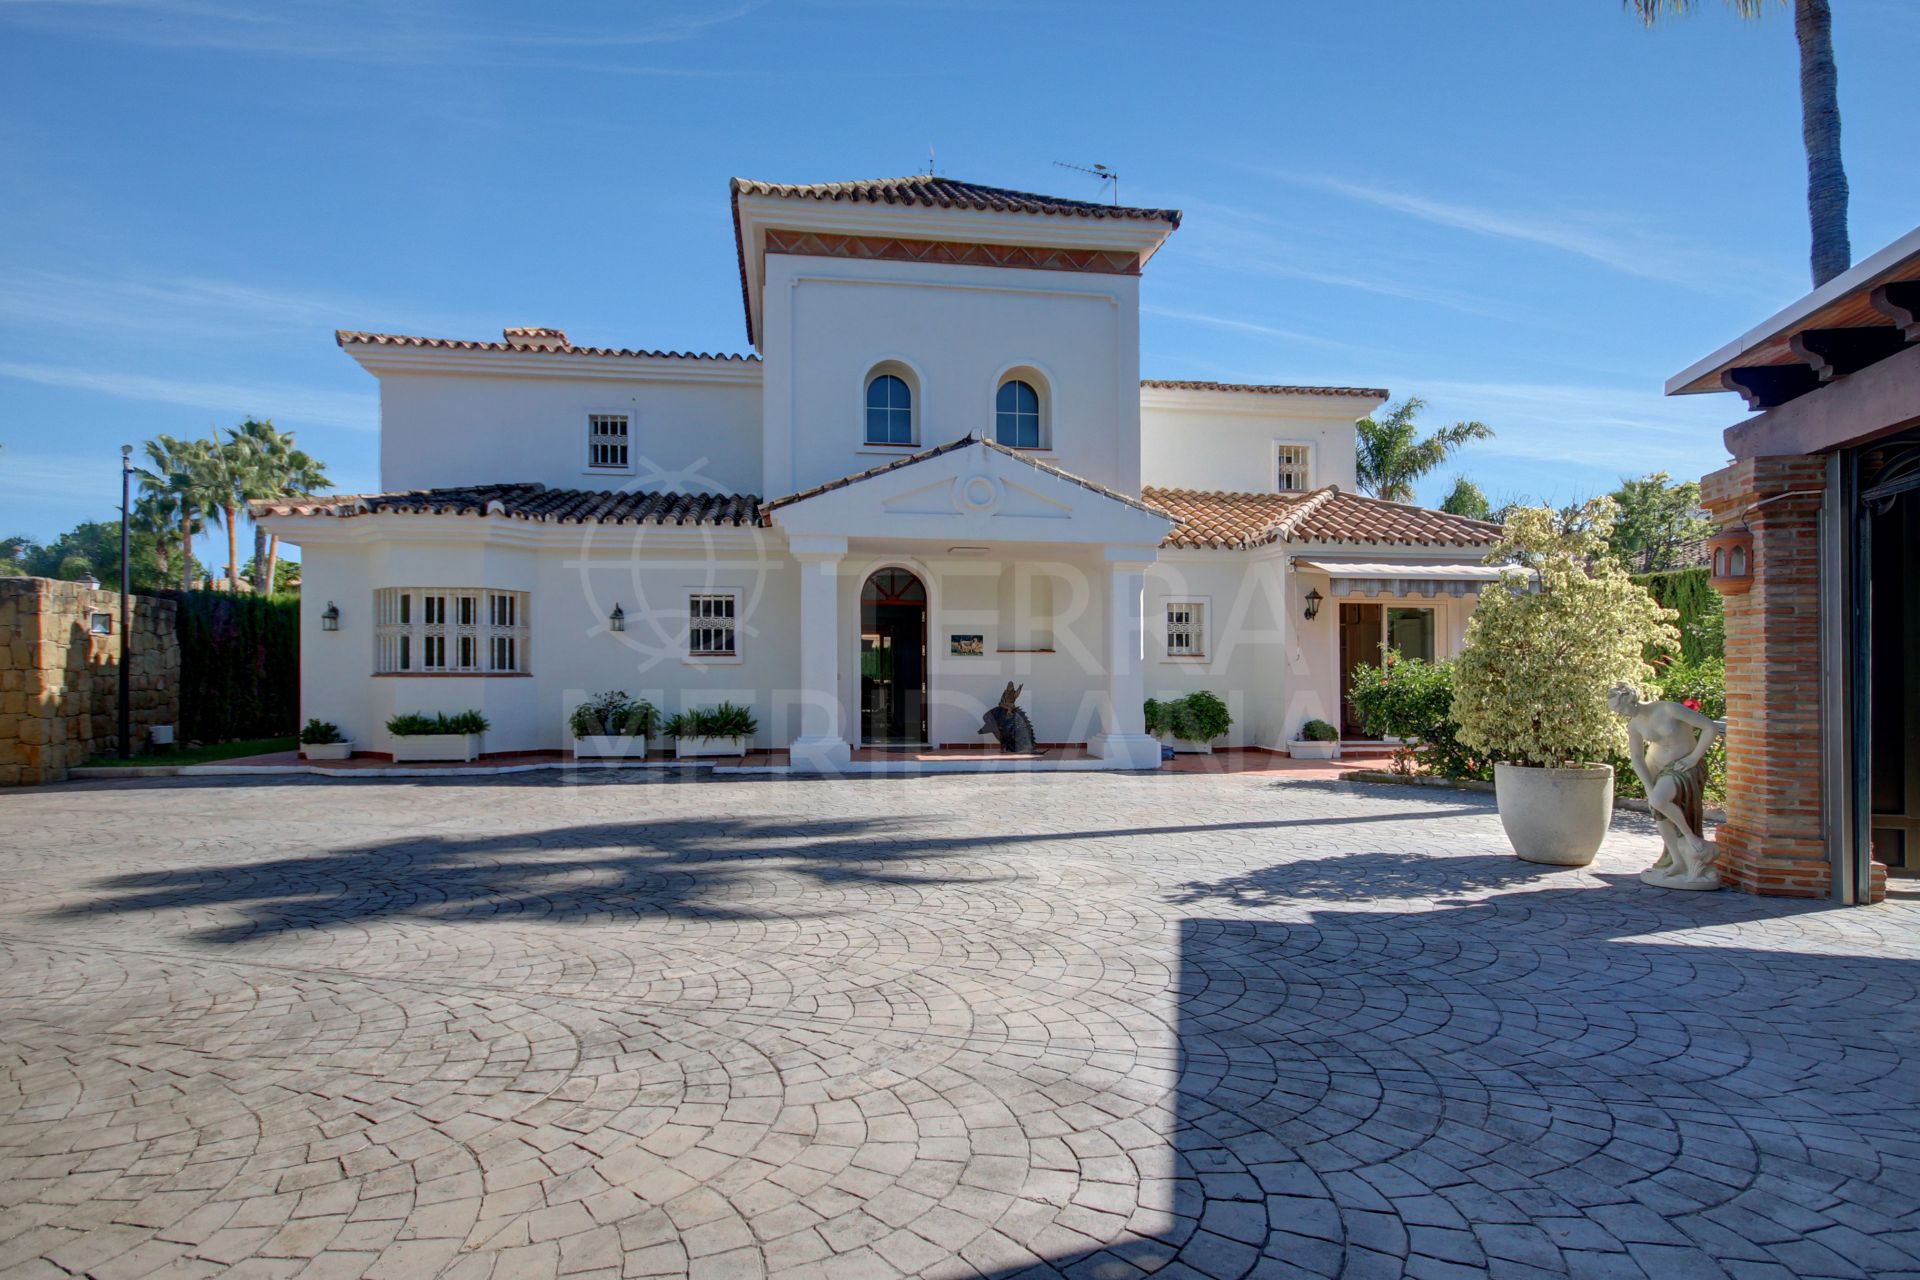 Villa de estilo mediterráneo con 5 dormitorios en venta cerca de la playa en Casasola, Estepona